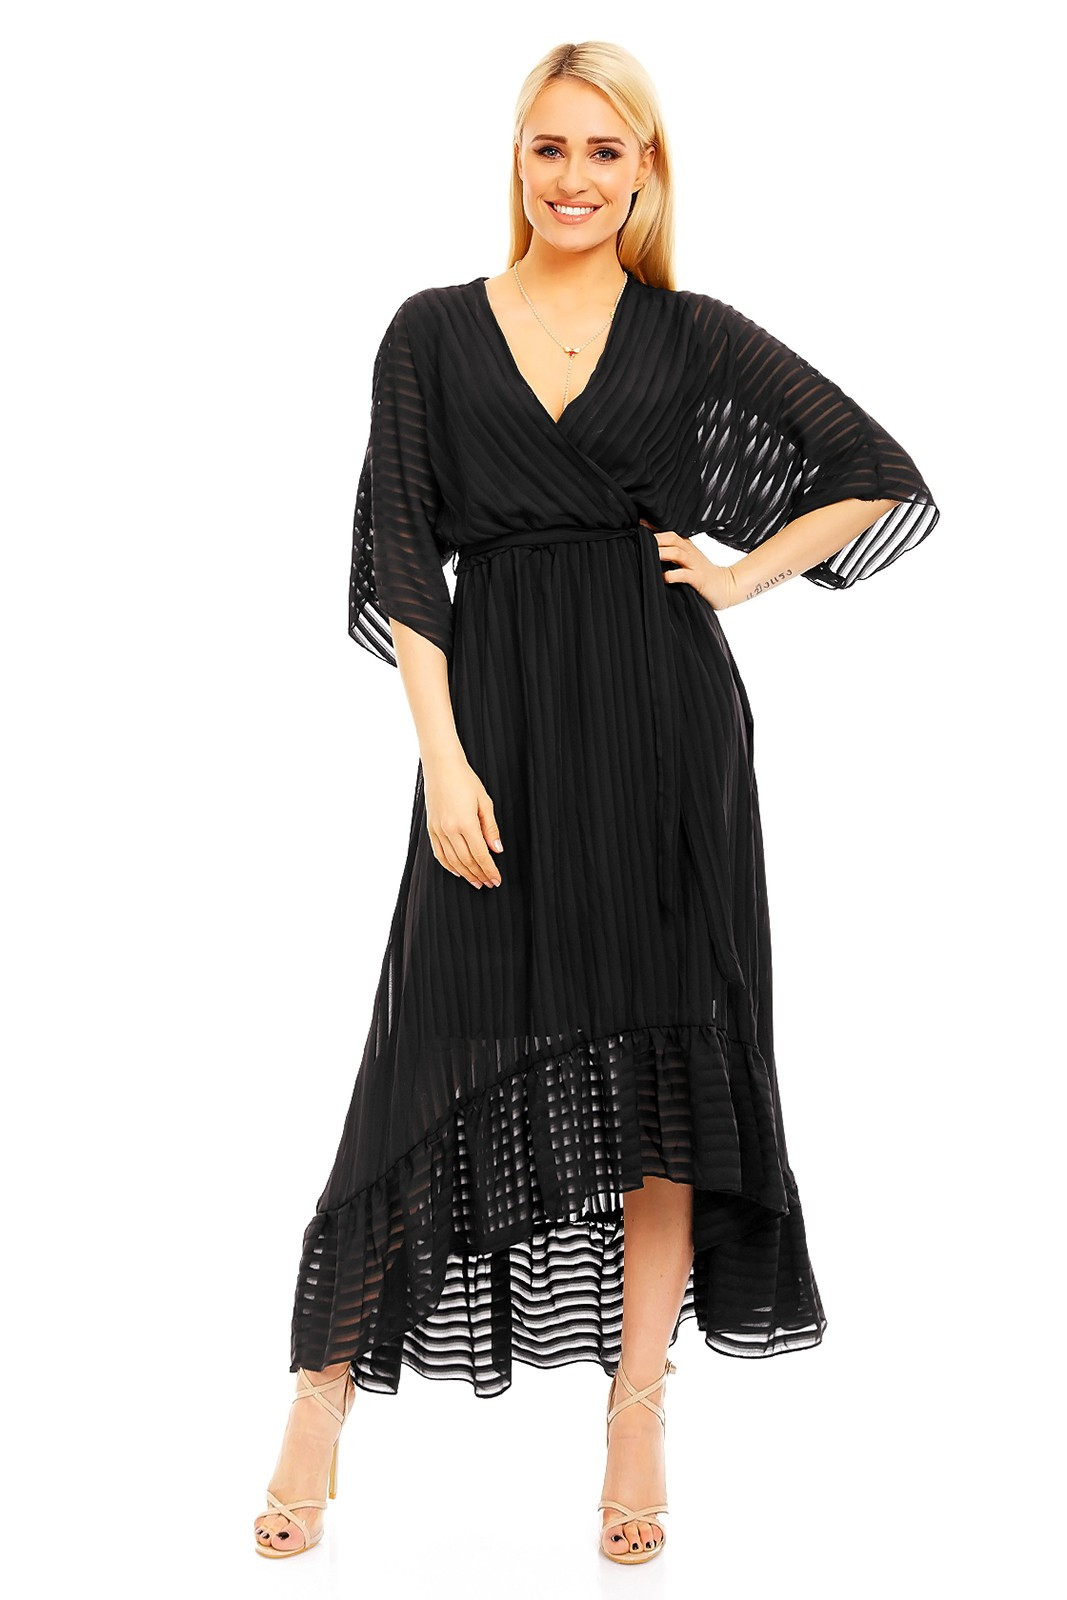 Lehké dámské šaty s asymetrickou sukní černé - LULU&LOVE černá S/M